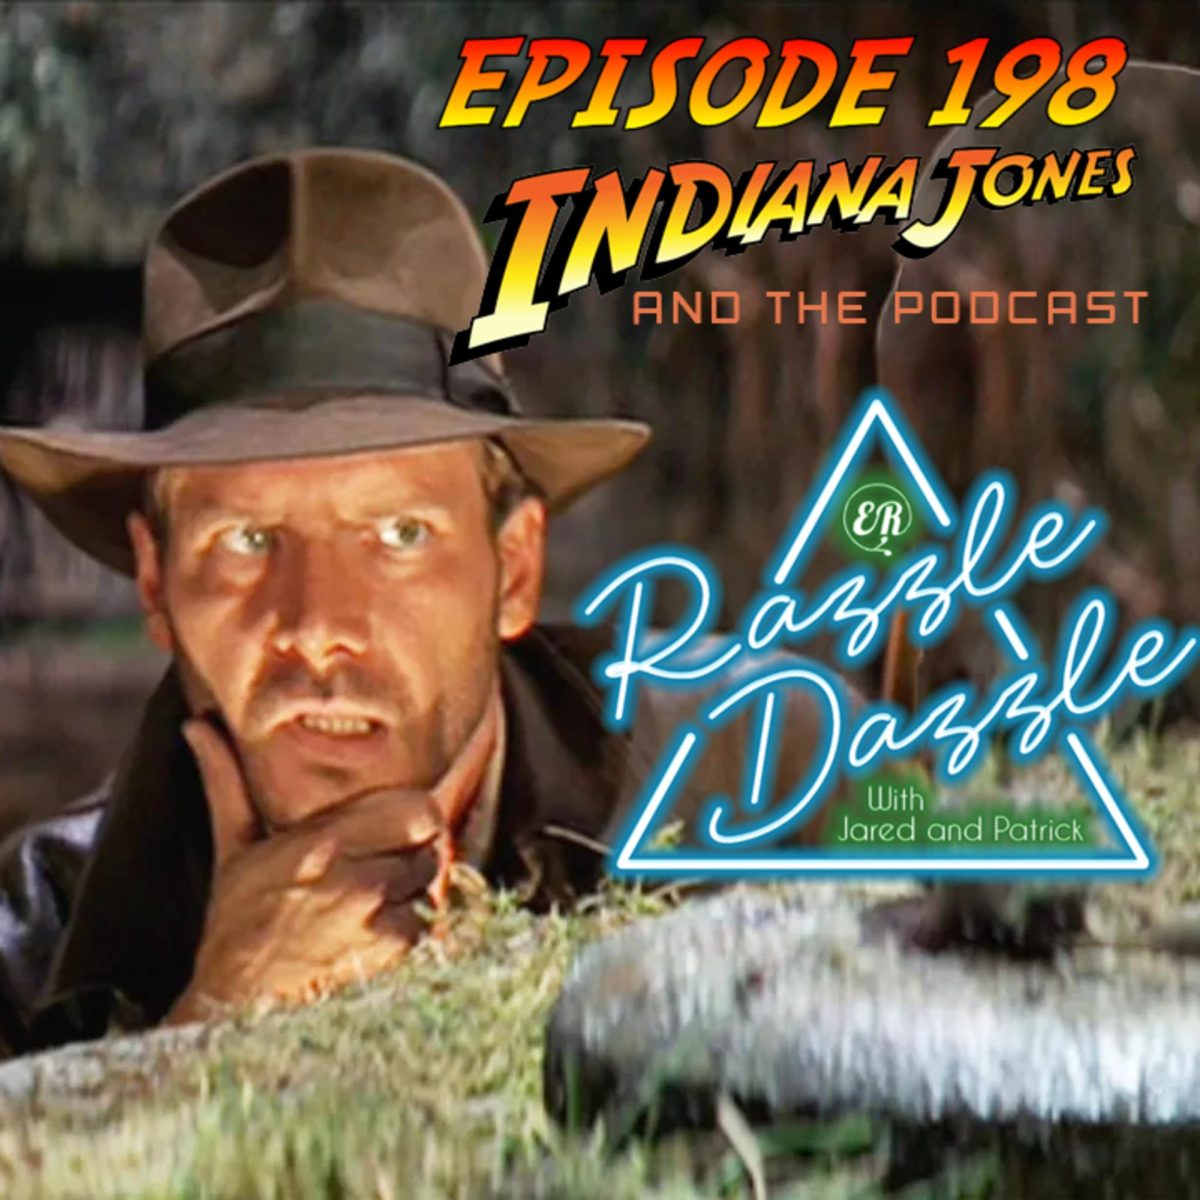 Episode 198: Indiana Jones